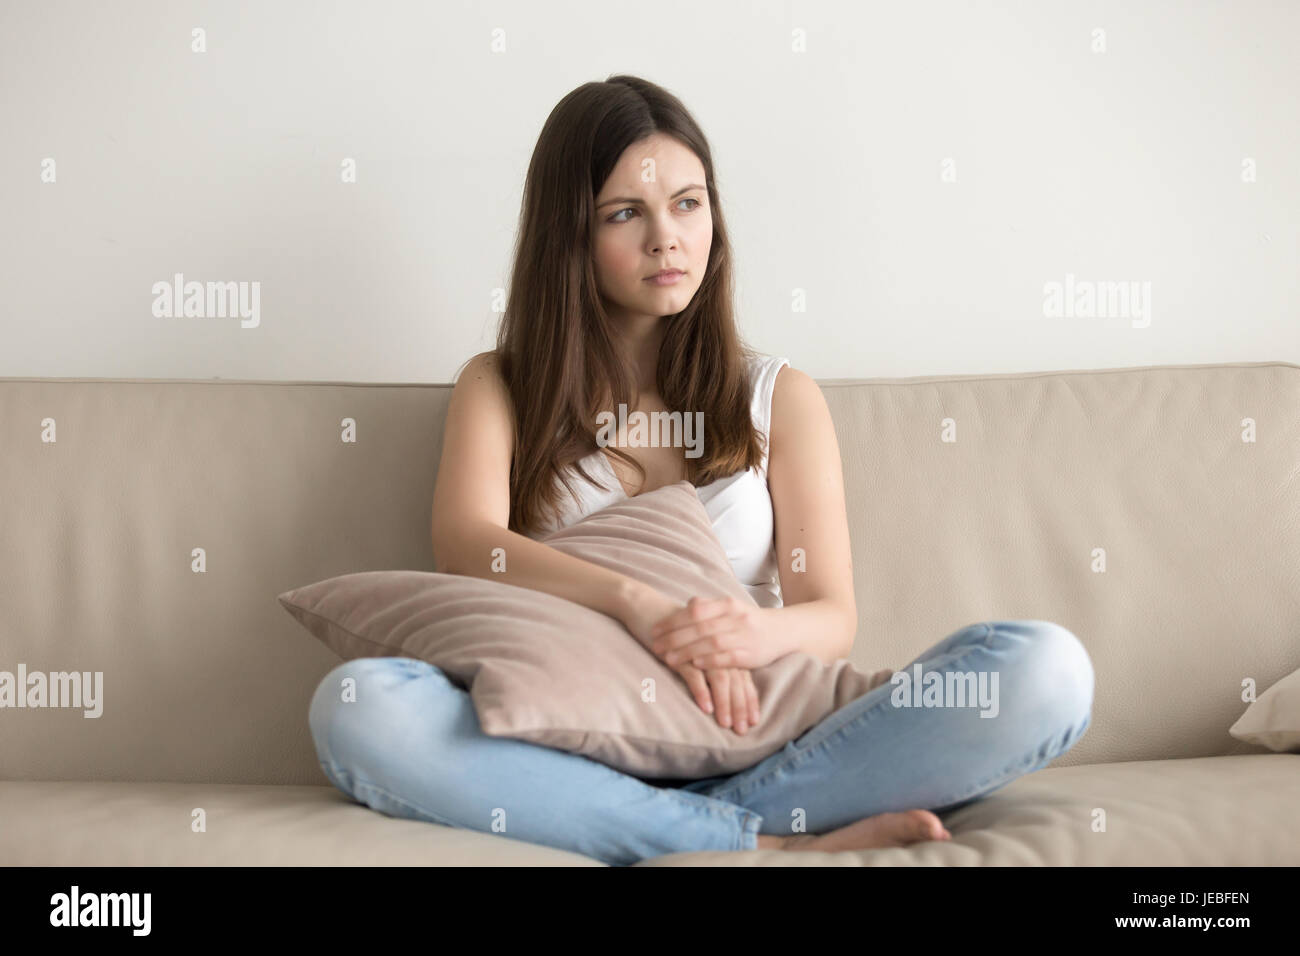 Preocupado joven sentado en un sofá en casa Foto de stock